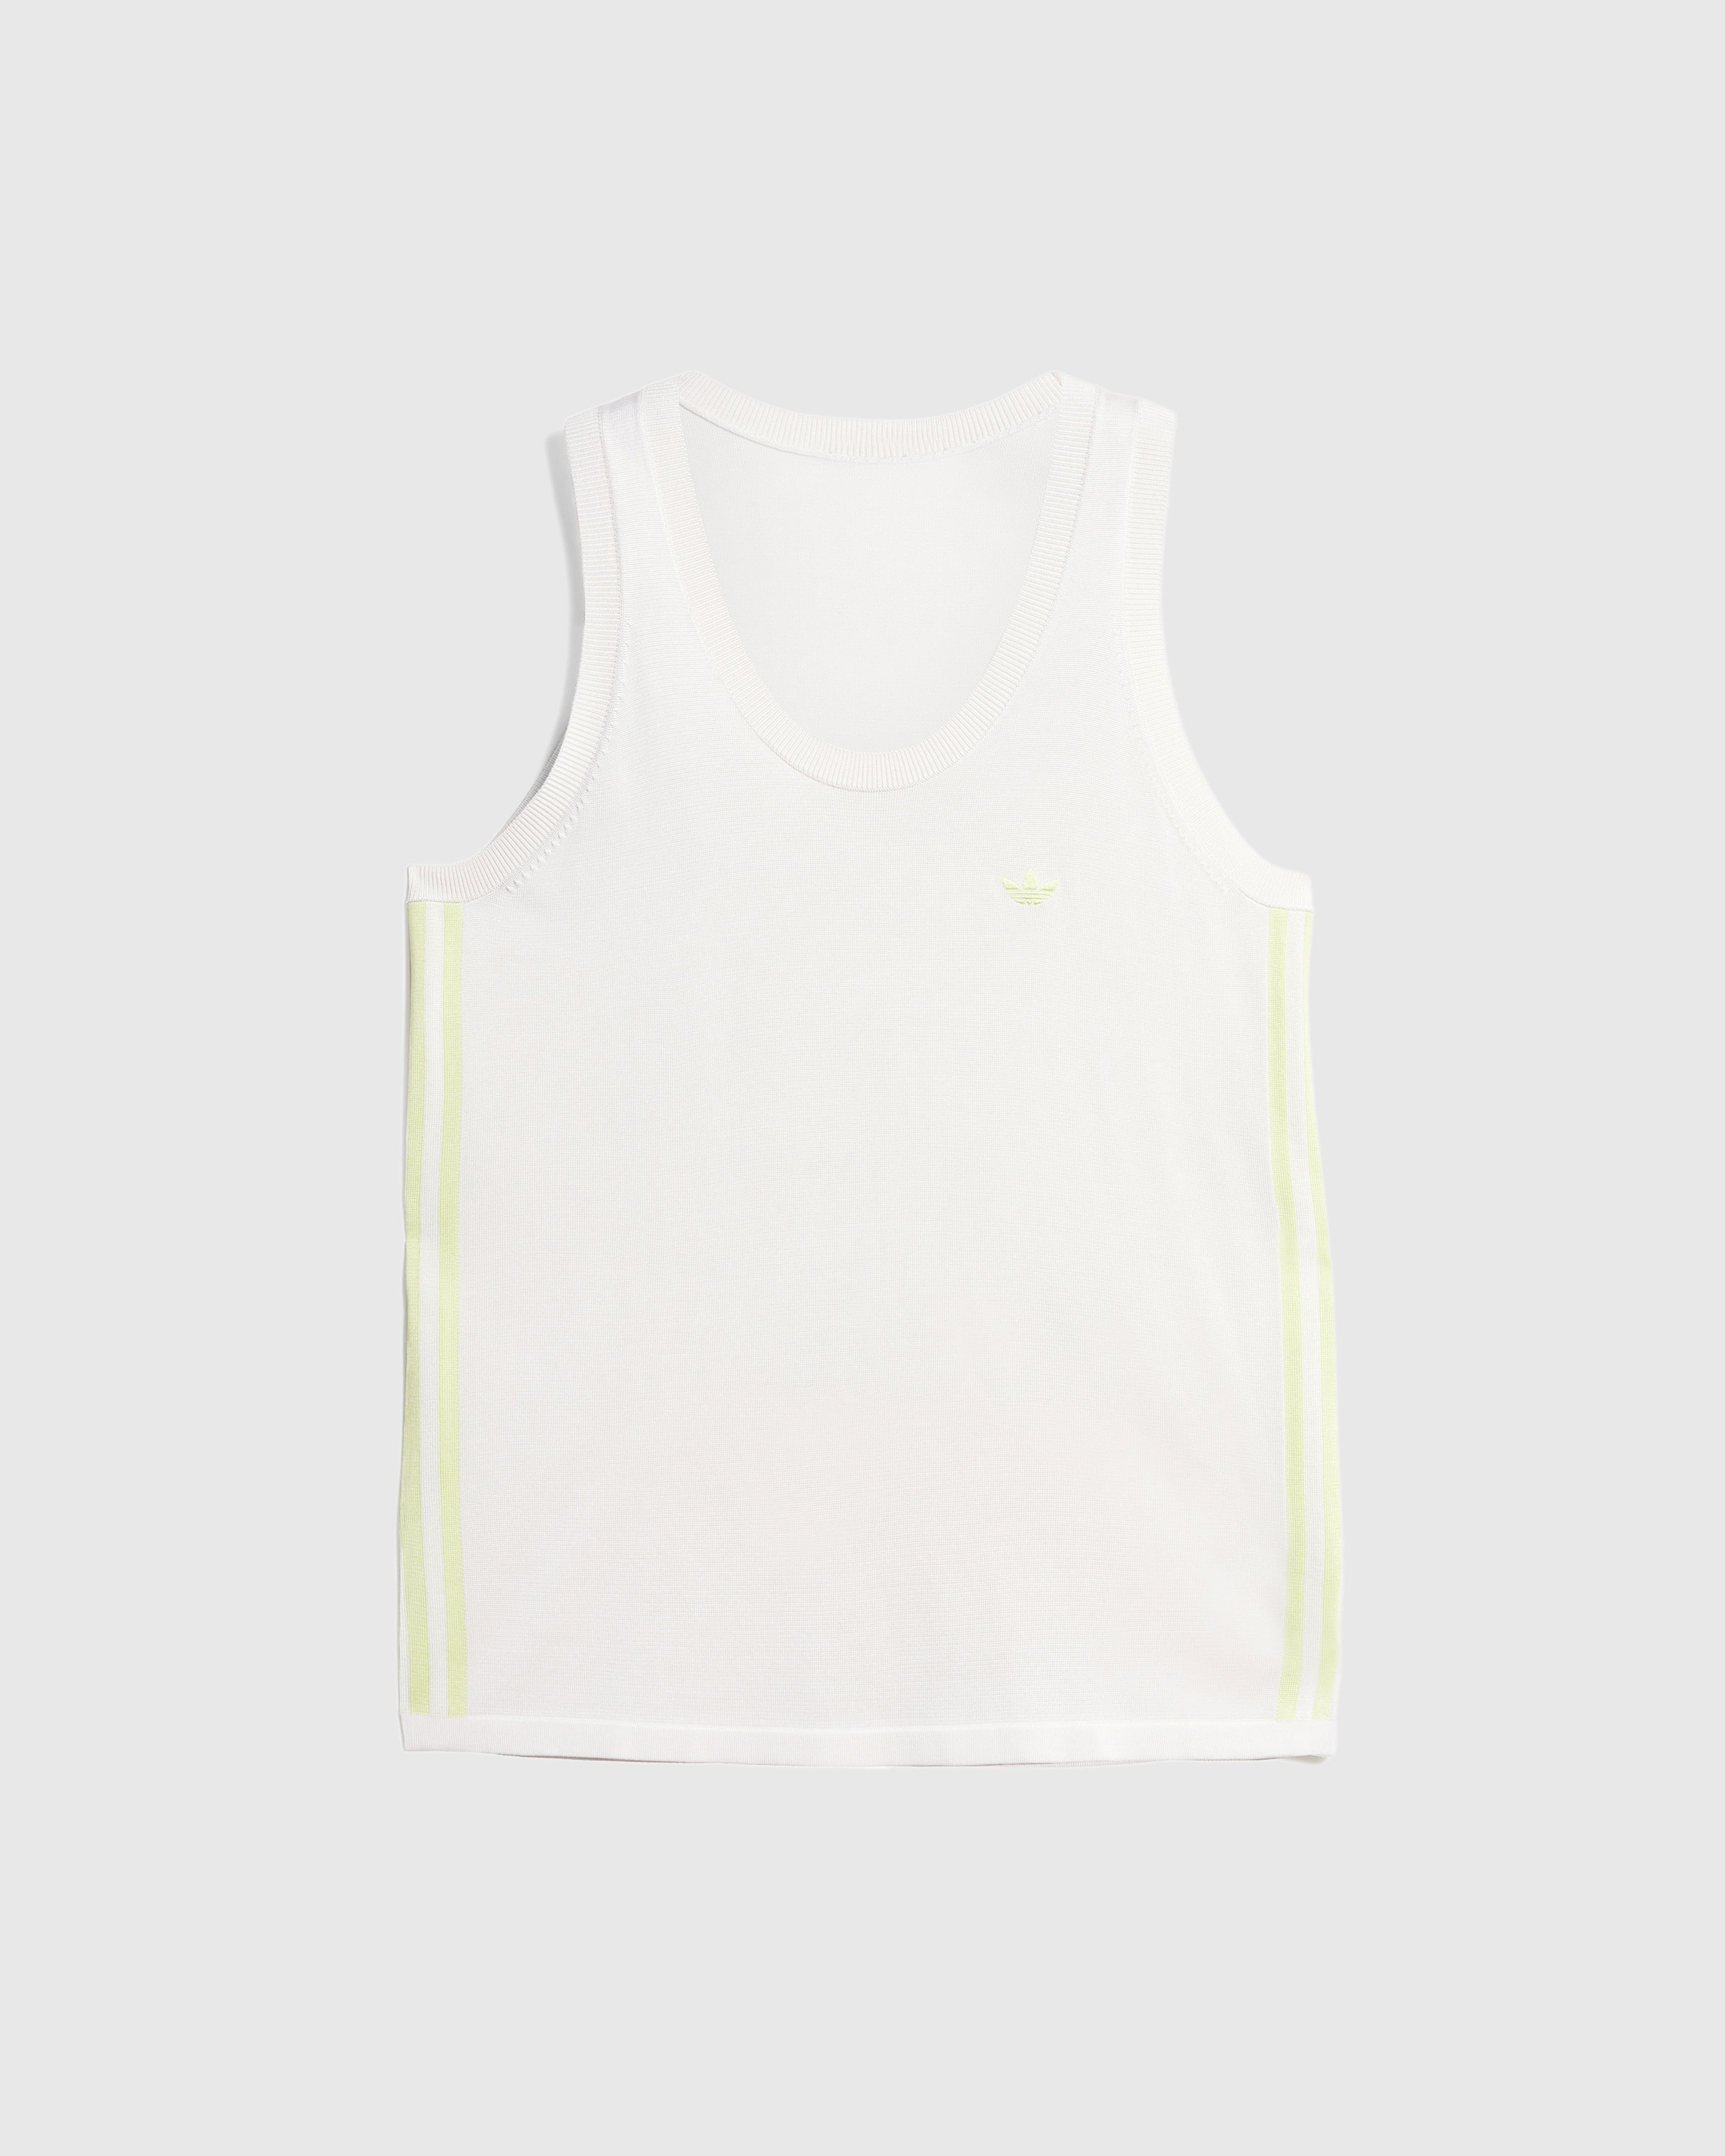 Adidas x Wales Bonner – Knit Vest Chalk White/Semi Frozen Yellow - Tank Tops - White - Image 1